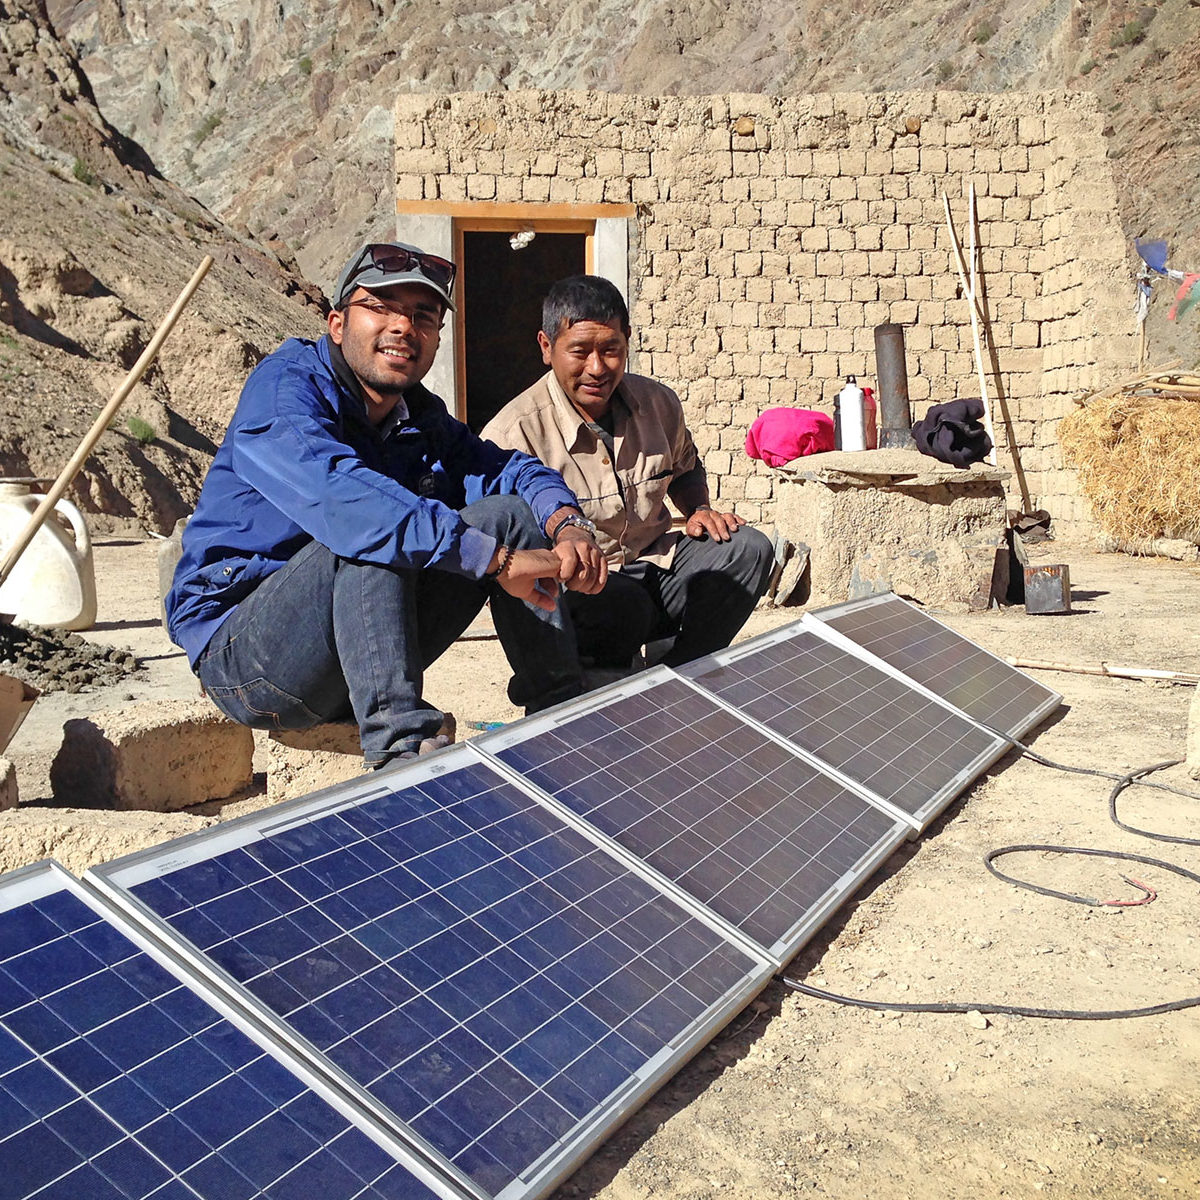 IEEE Smart Village Solar Panels in India